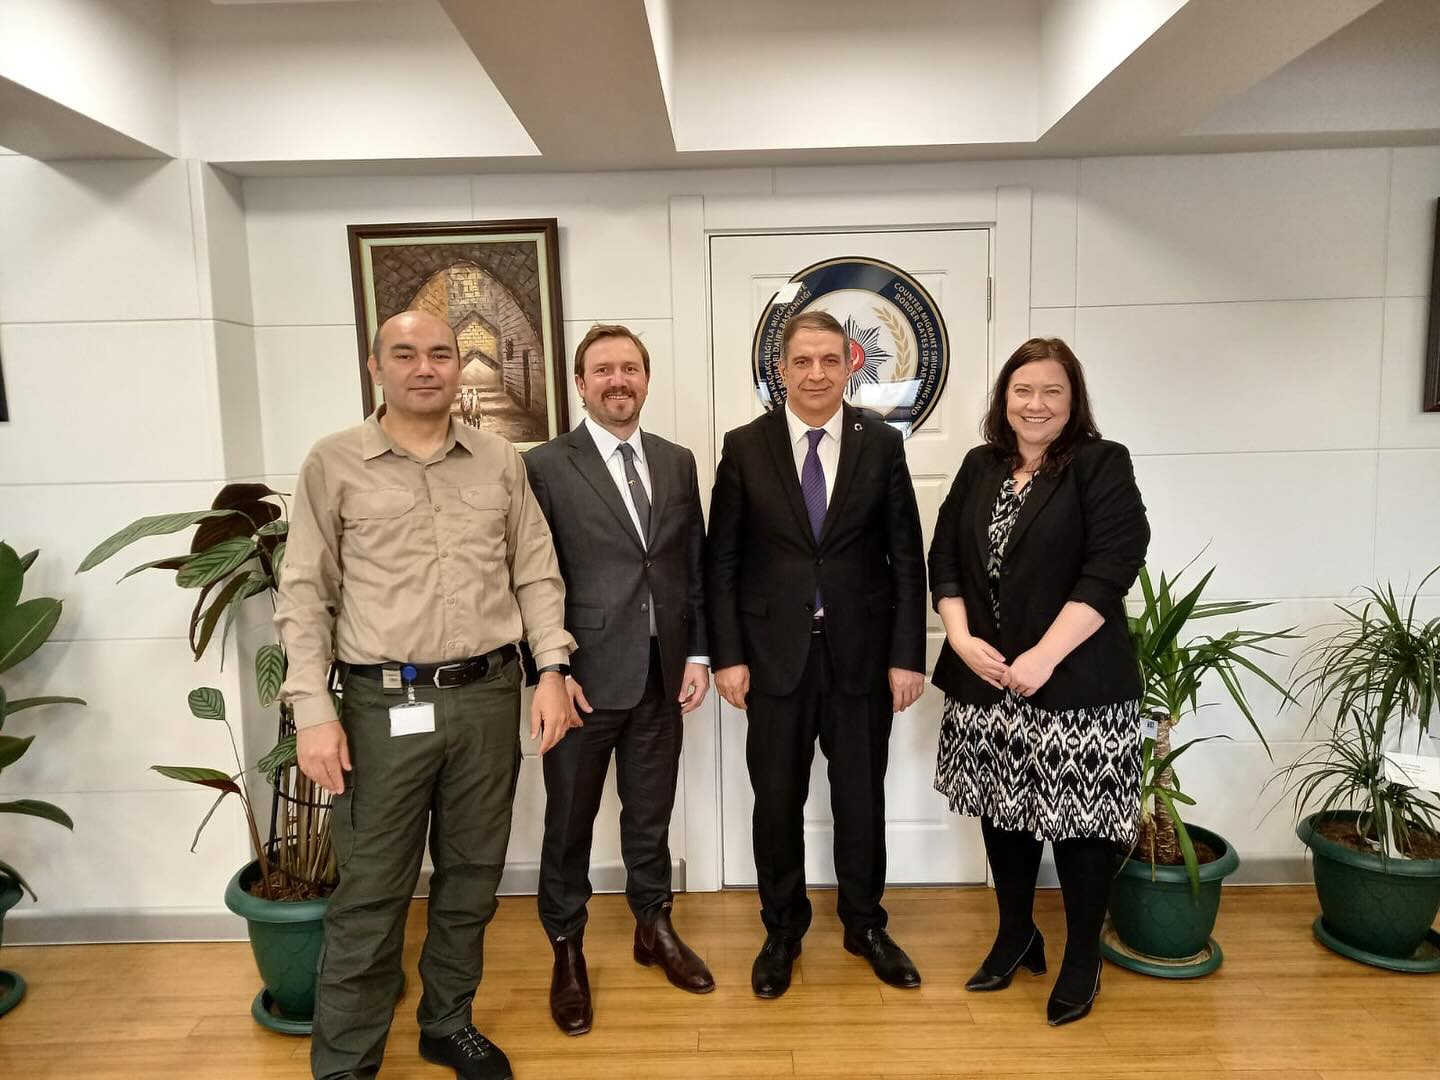 Türkiye'nin Sınır Güvenliği ve Göç Yönetimi Konularında Çalışan Yetkili, Avustralya Büyükelçilik Göç ve Sınır Koruma Bölüm Başkatibi ile Görüştü